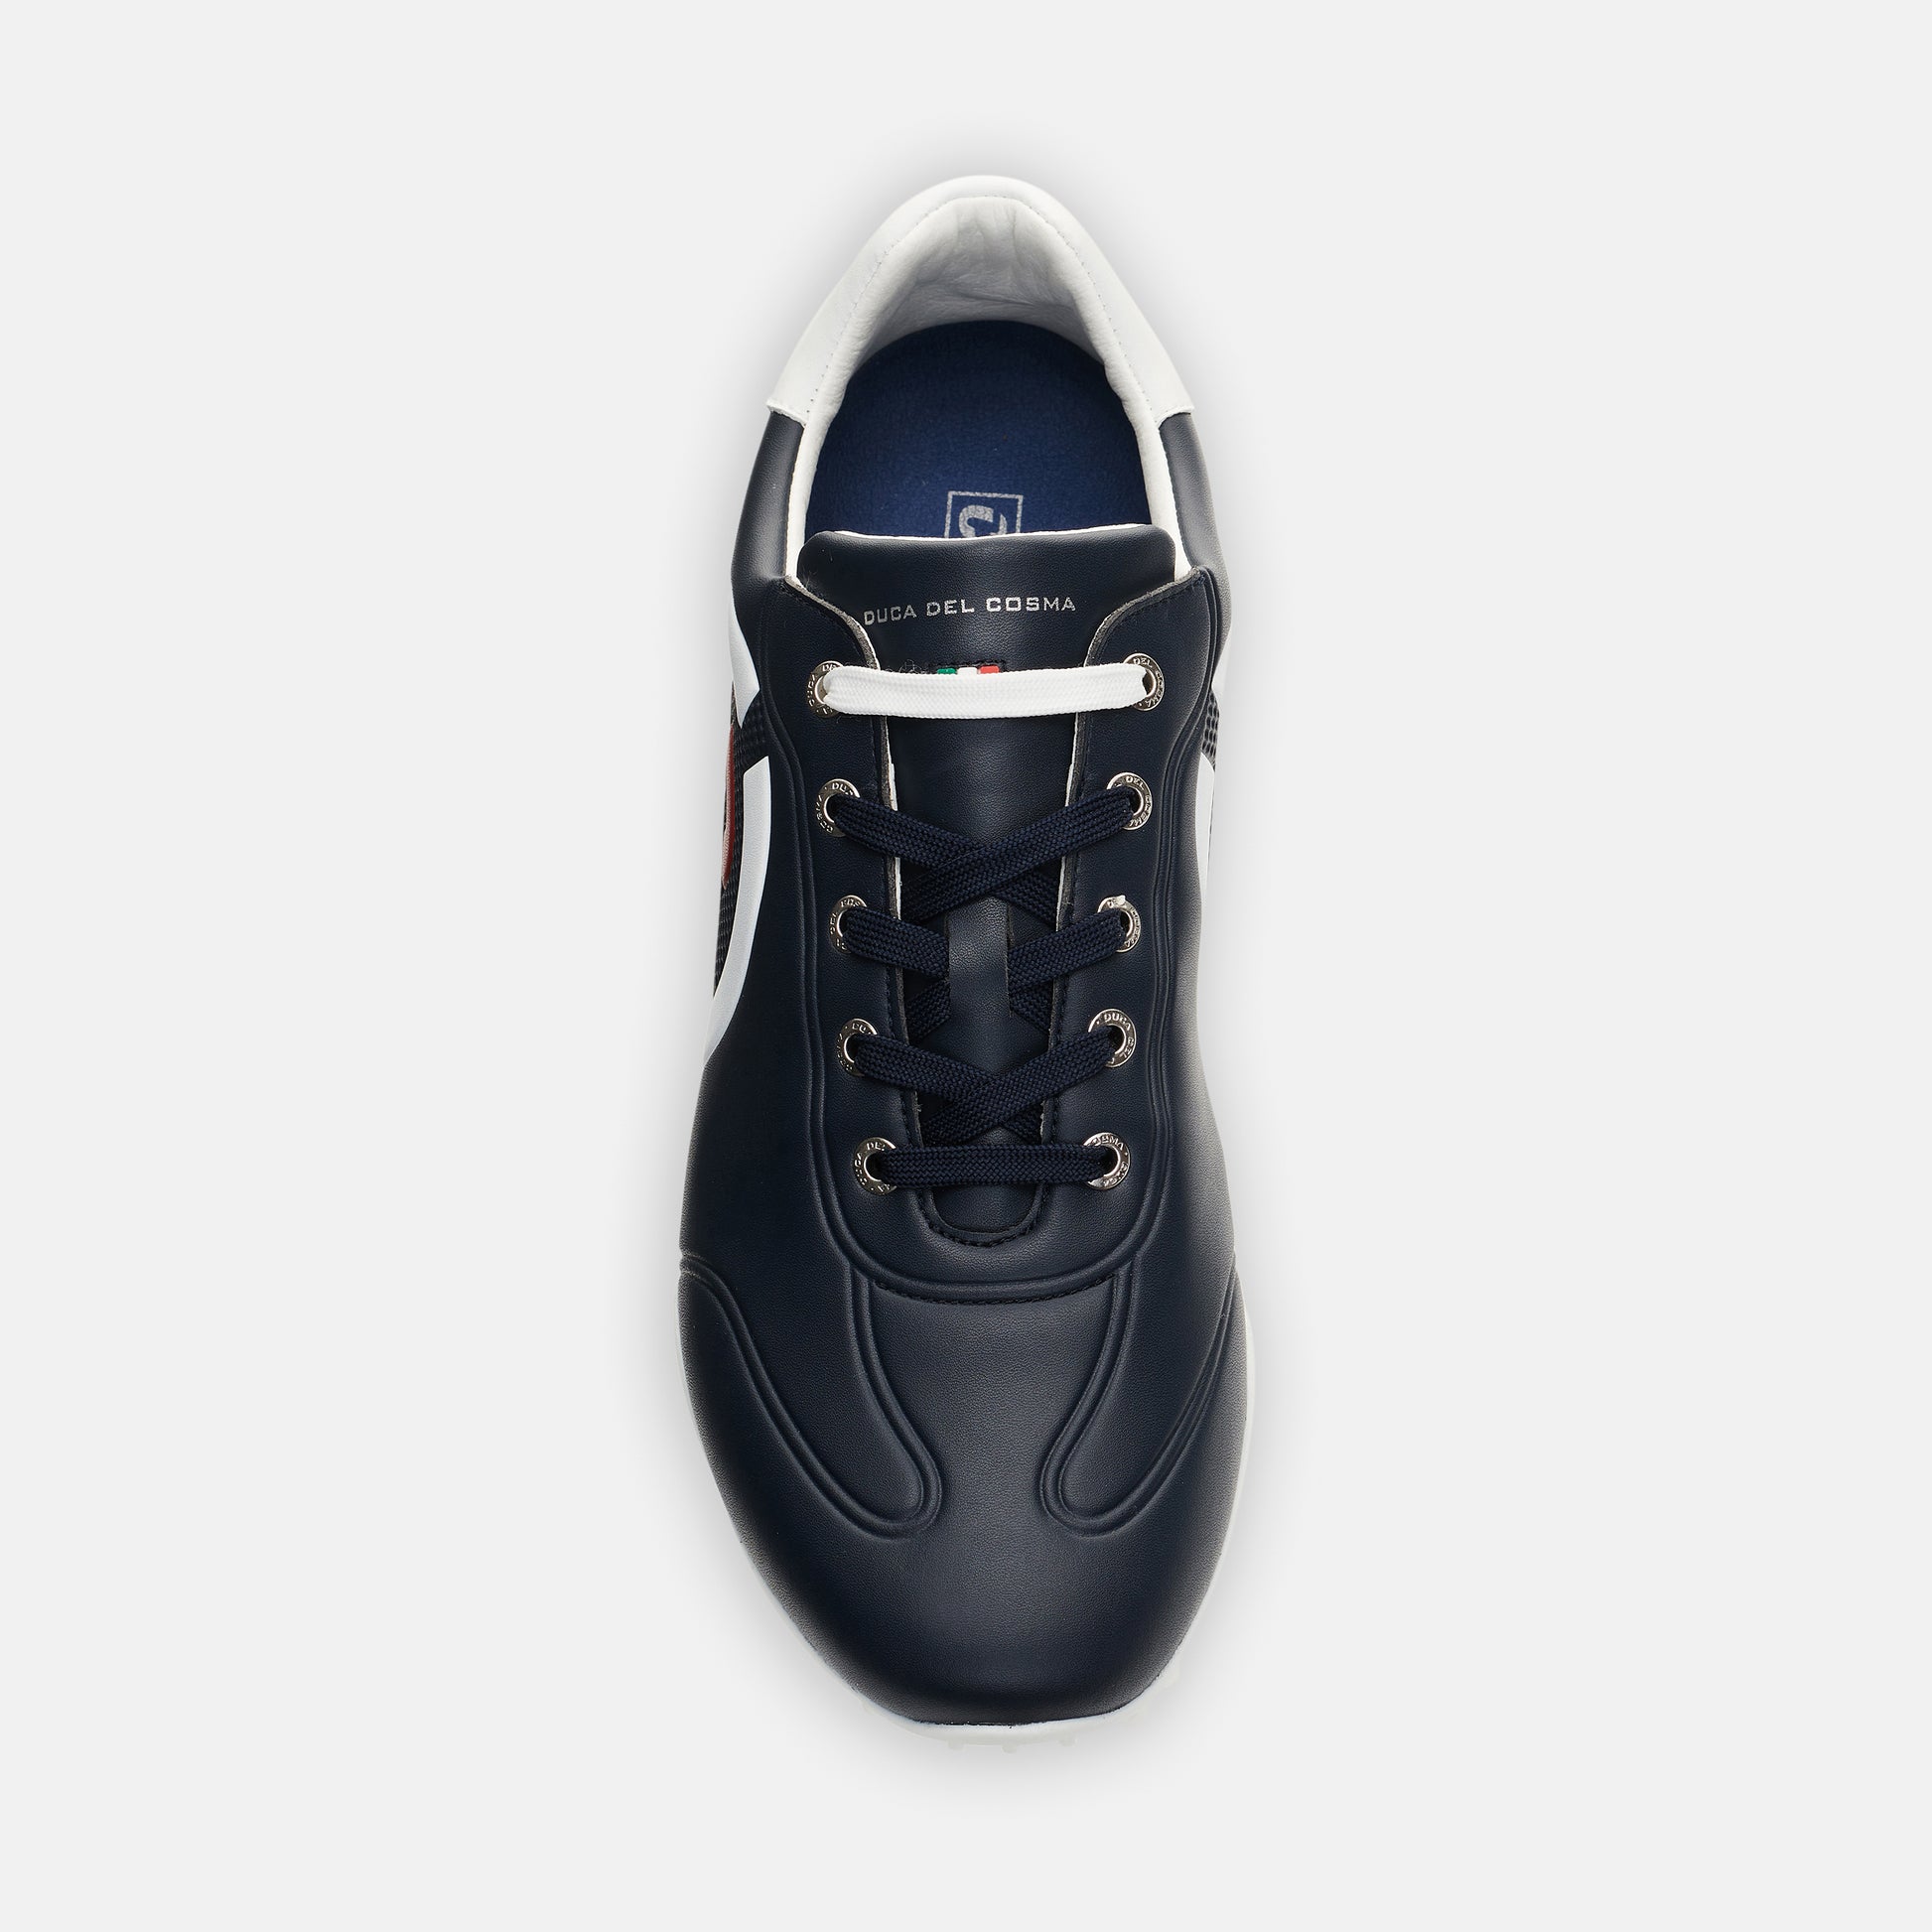 Kingscup waterproof blue men's golf shoe best priced golf shoe